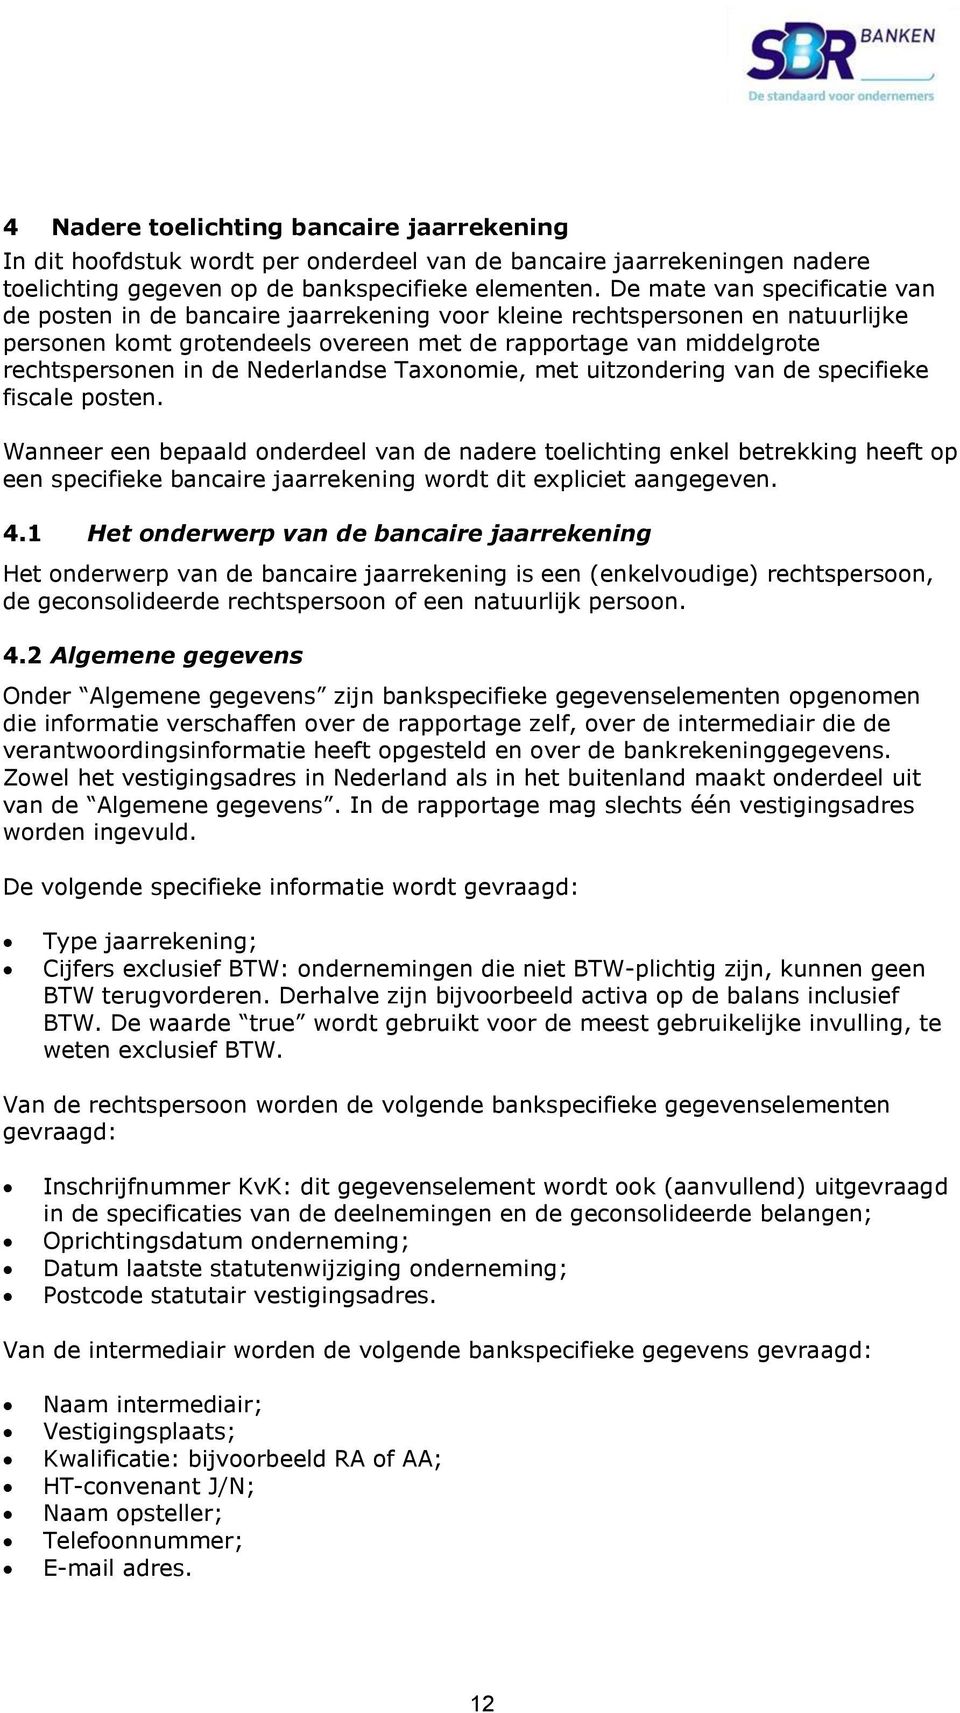 Nederlandse Taxonomie, met uitzondering van de specifieke fiscale posten.